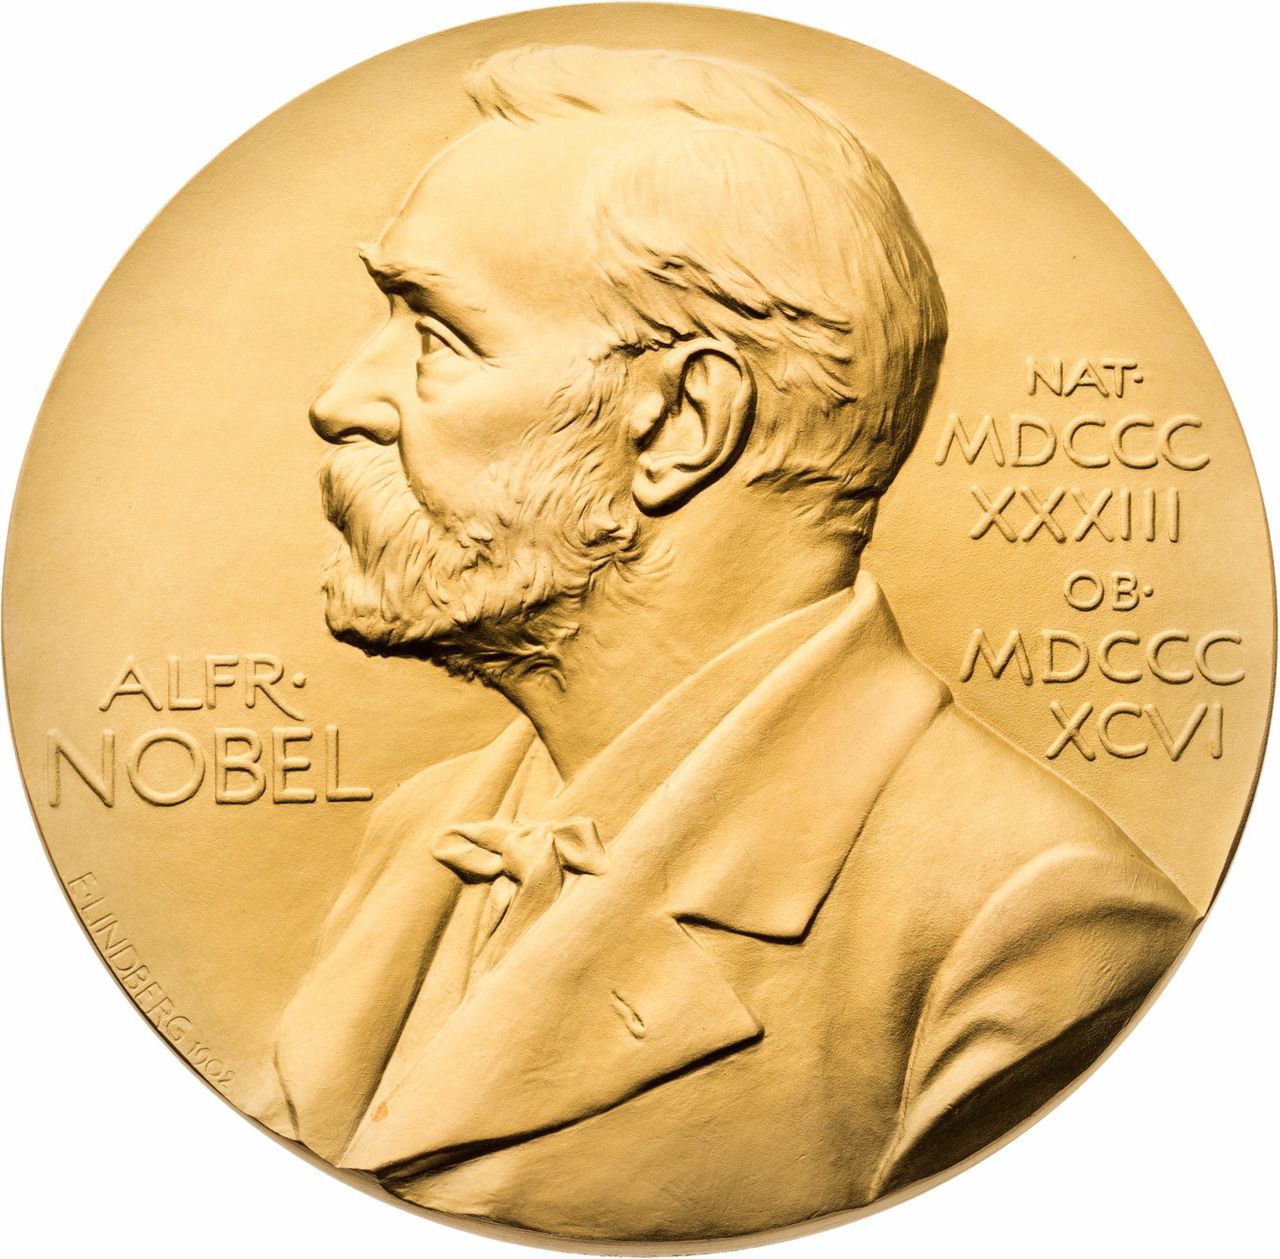 ‘Verenigde Staten winnen steeds minder Nobelprijzen’ – maar wat betekent dat? 